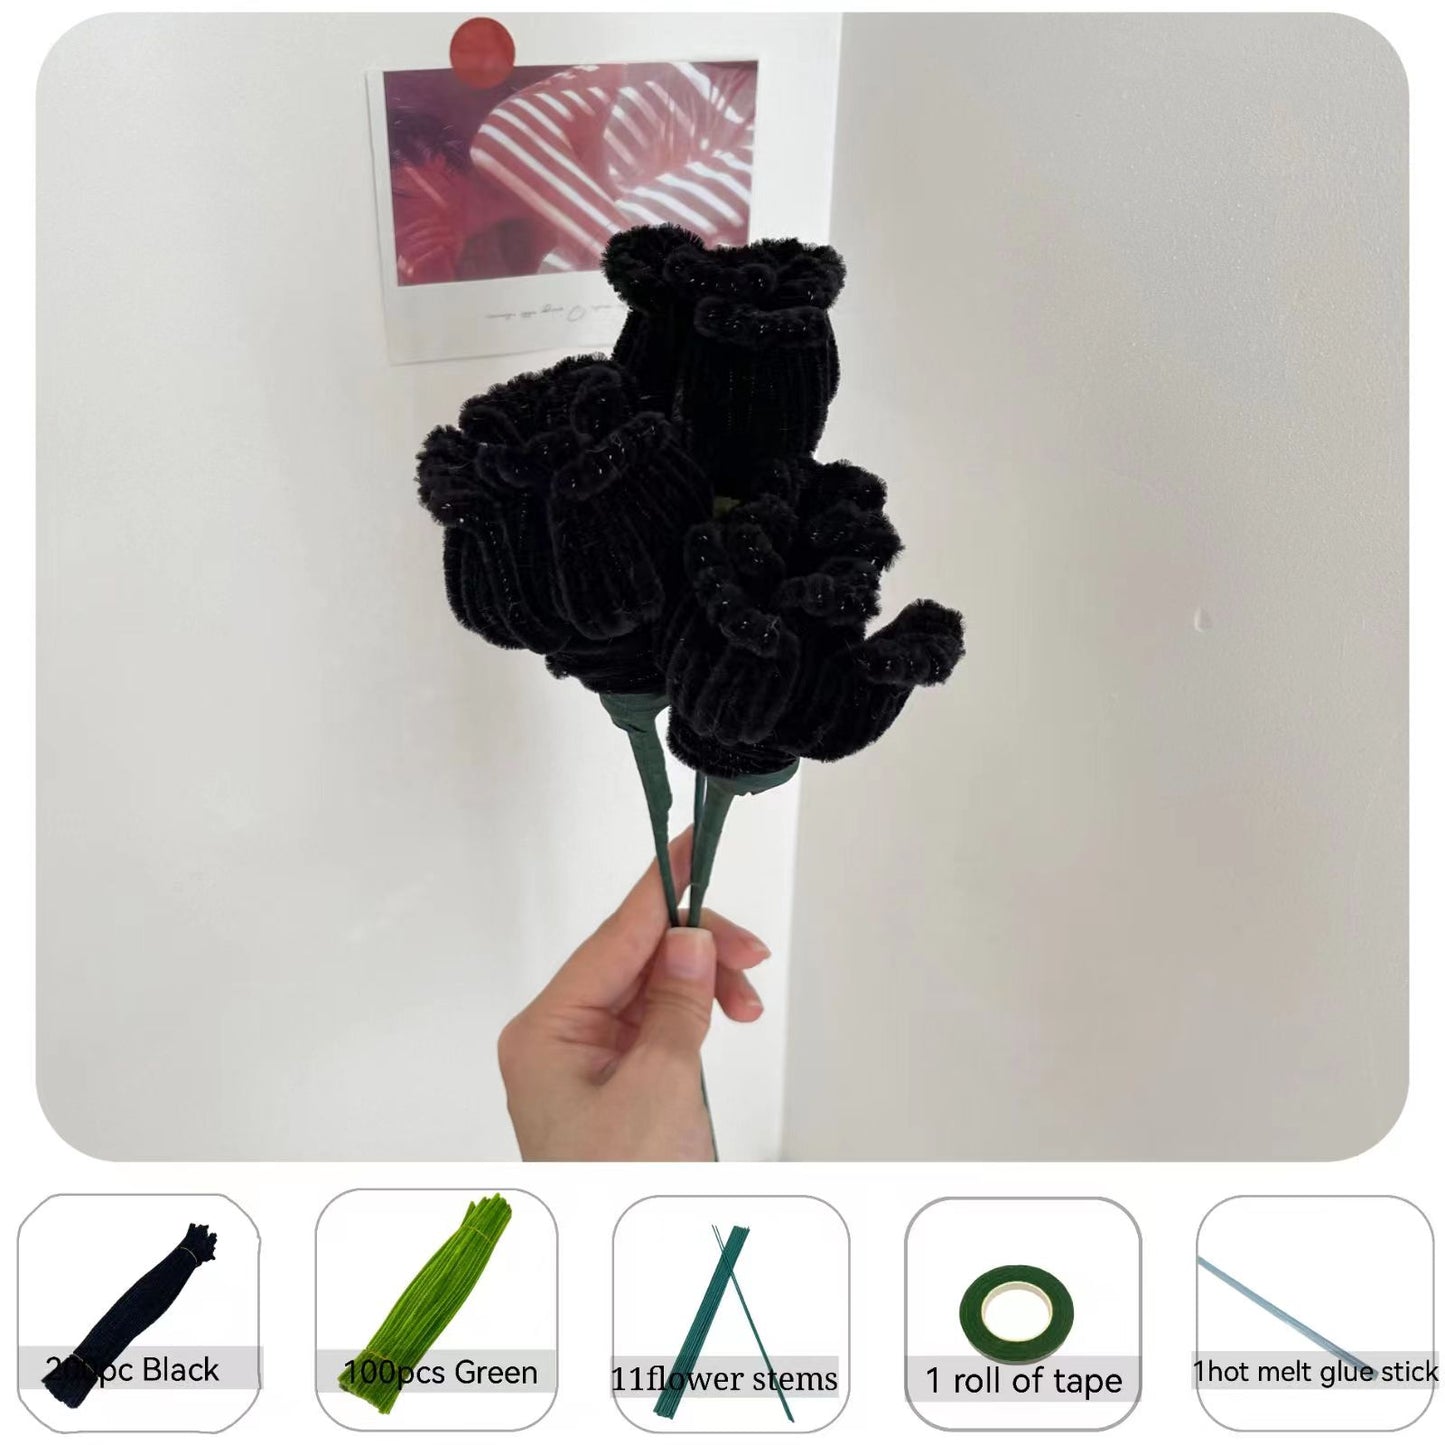 300pcs bricolage cure-pipe fleurs bouquet cadeau kit ensemble avec tutoriel cadeau saint valentin